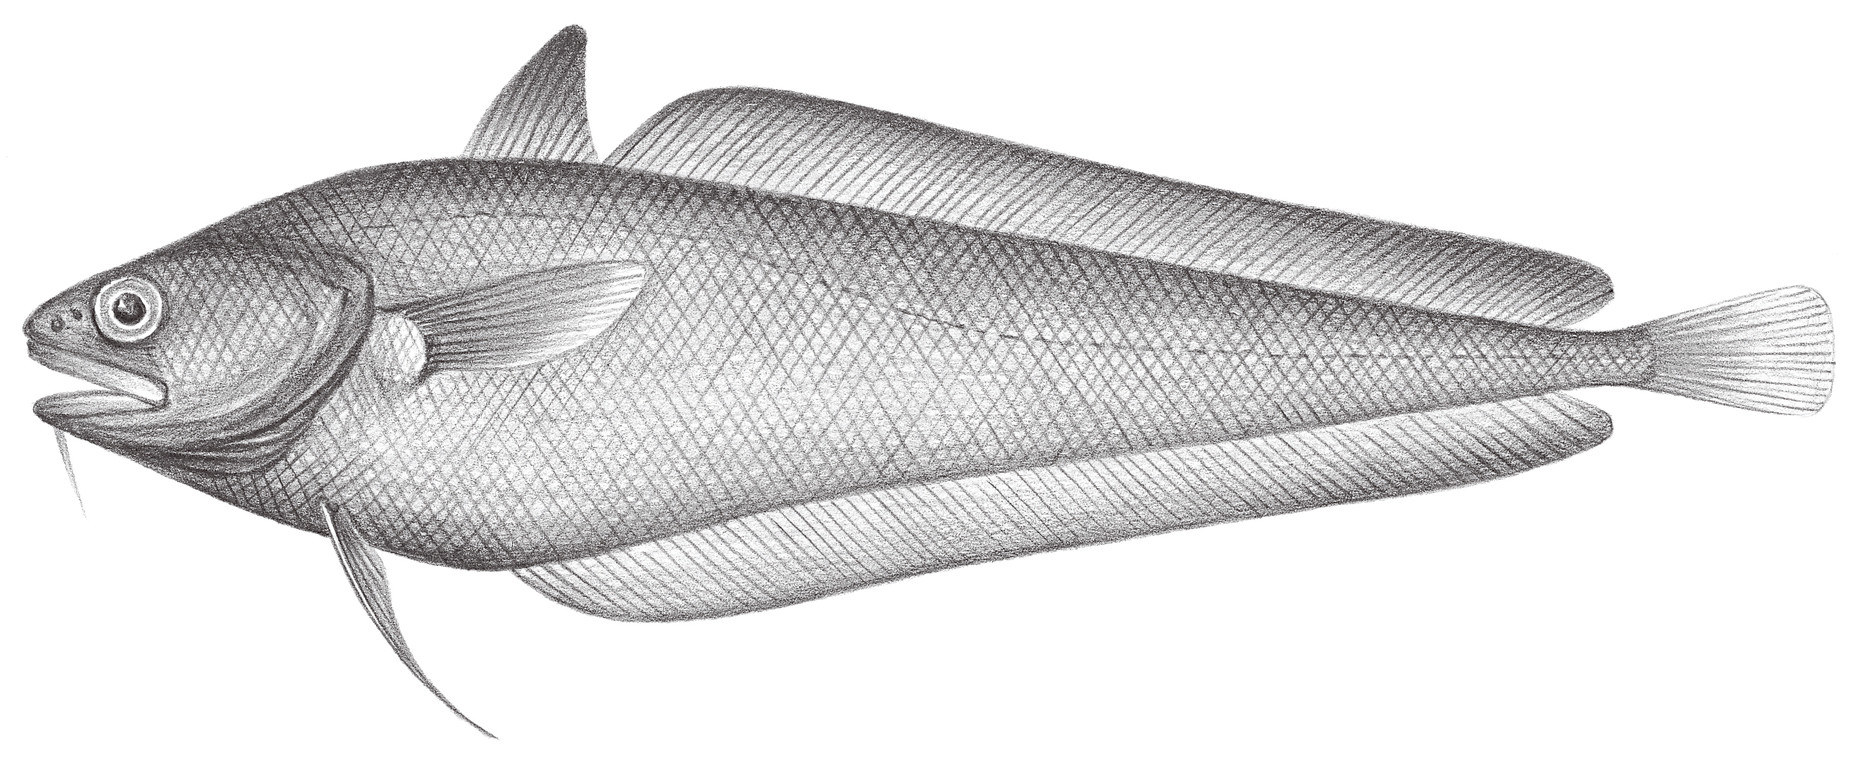 609.	馬氏小褐鱈 Physiculus maximowiczi (Herzenstein, 1896)